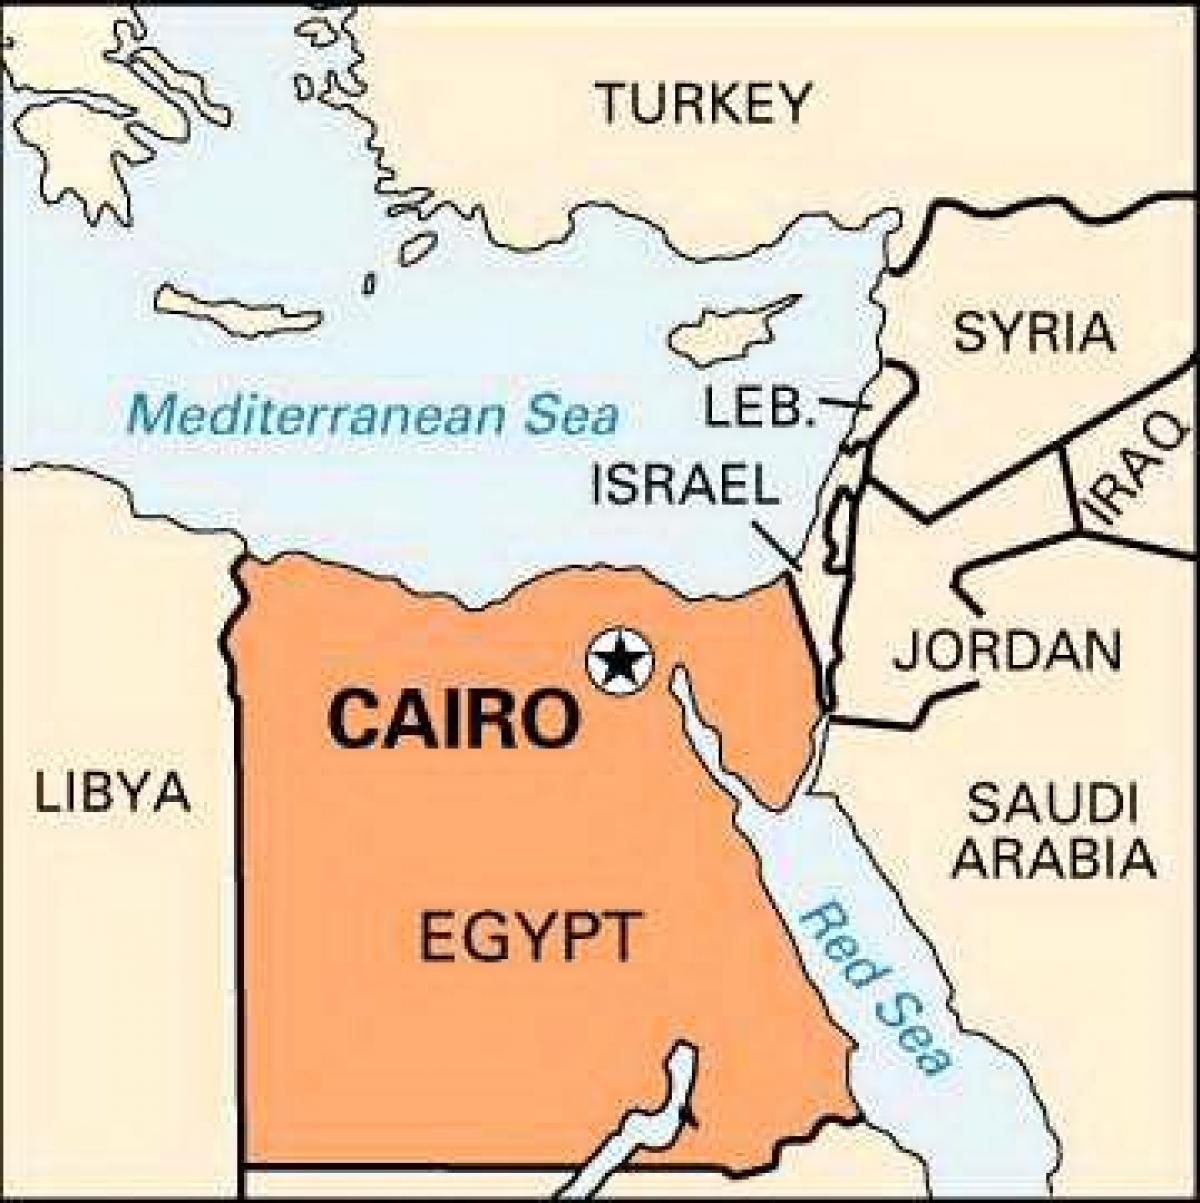 Peta lokasi kairo